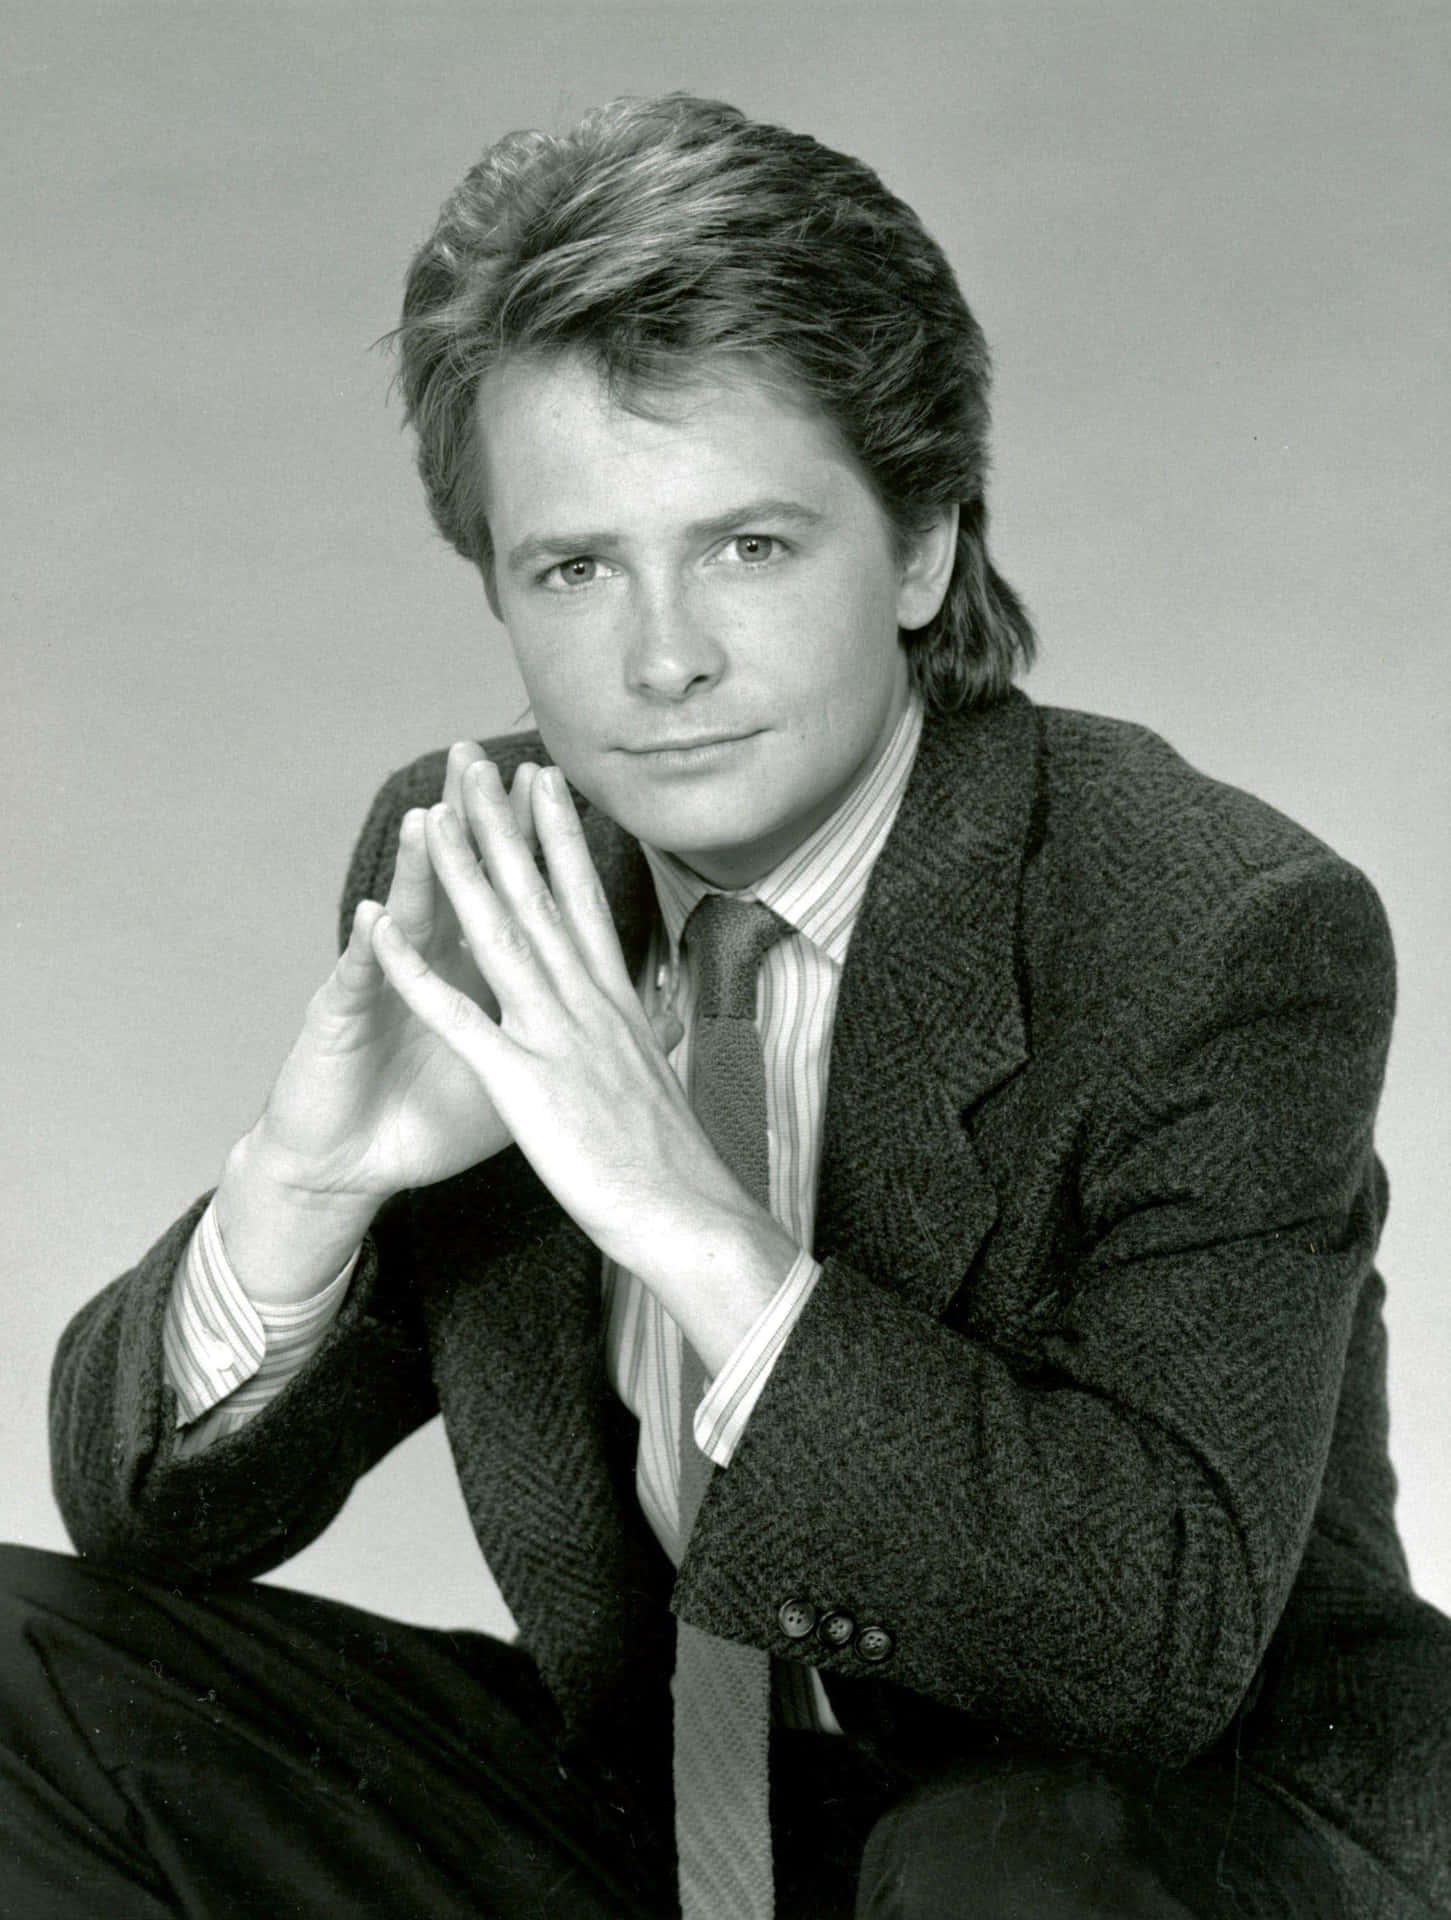 Michael J. Fox, Actor and Activist Wallpaper